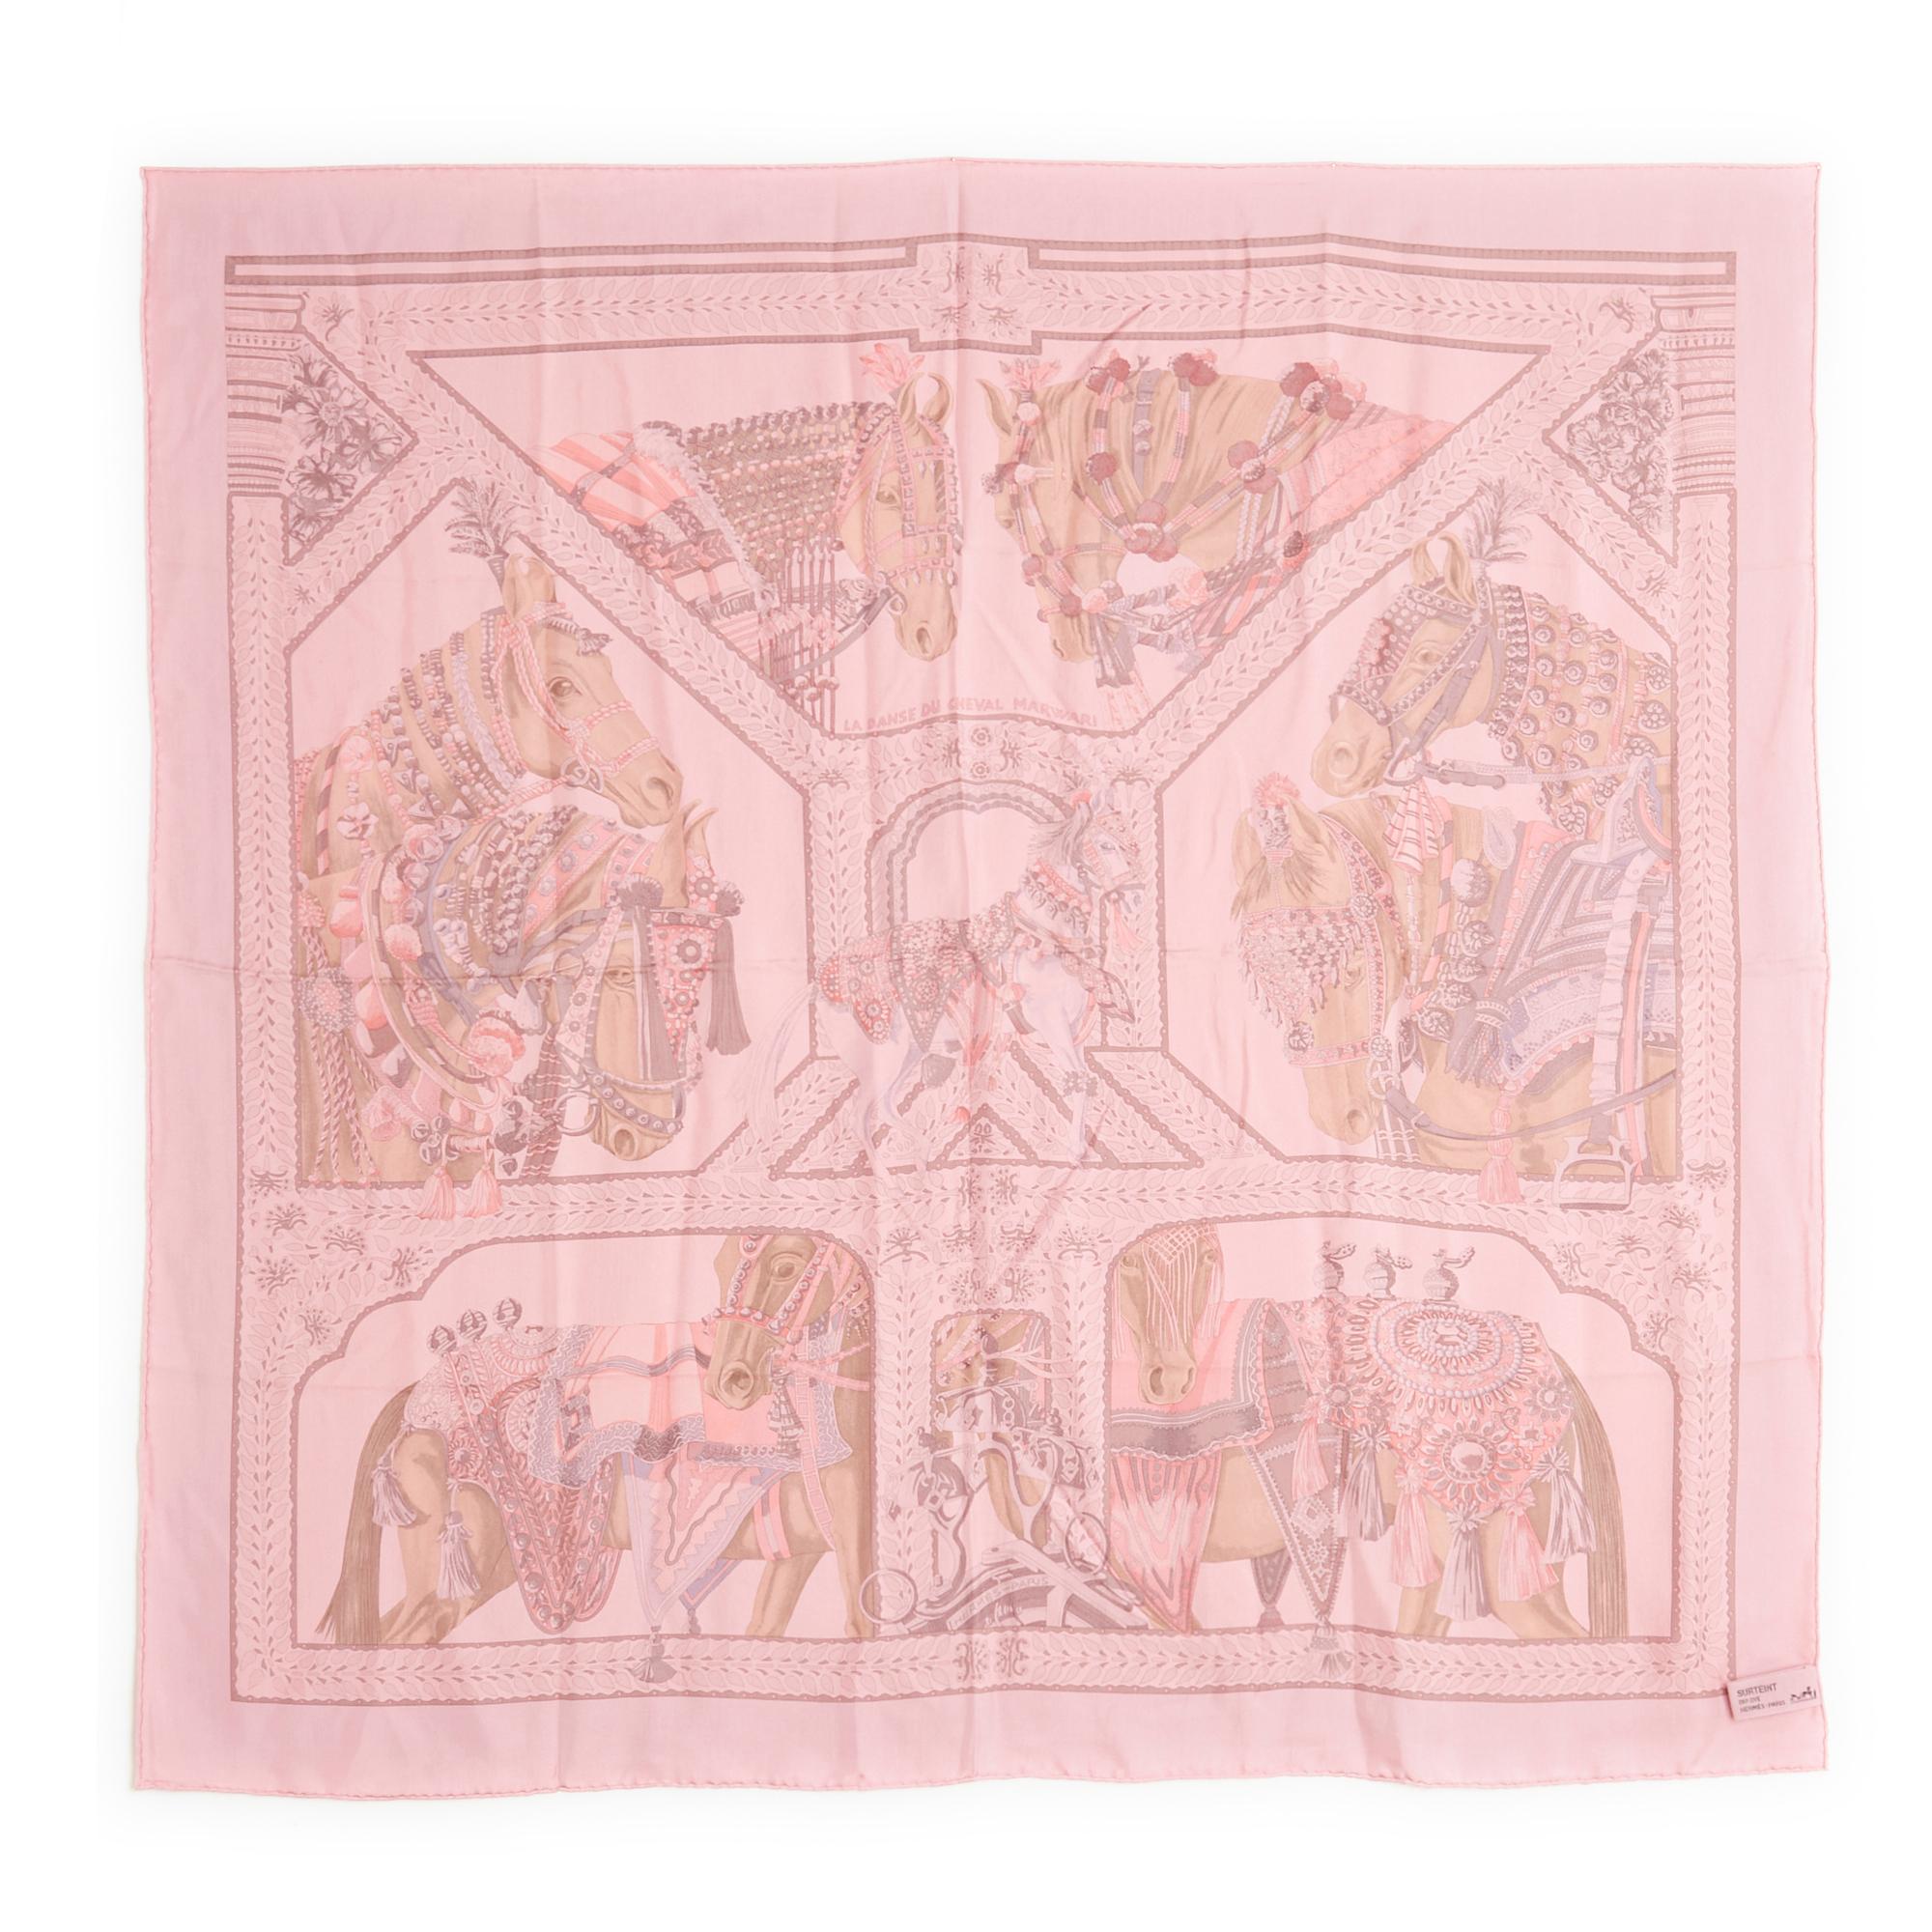 Hermès Quadrat 90 Schal aus Seiden-Twill, La Danse du Cheval Marwari-Muster von Annie Faivre, erstmals 2008 veröffentlicht und 2014 ausnahmsweise in einer gefärbten oder rosa Dip Dye-Version neu aufgelegt. Breite 90 cm x Länge ca. 90 cm. Der Platz